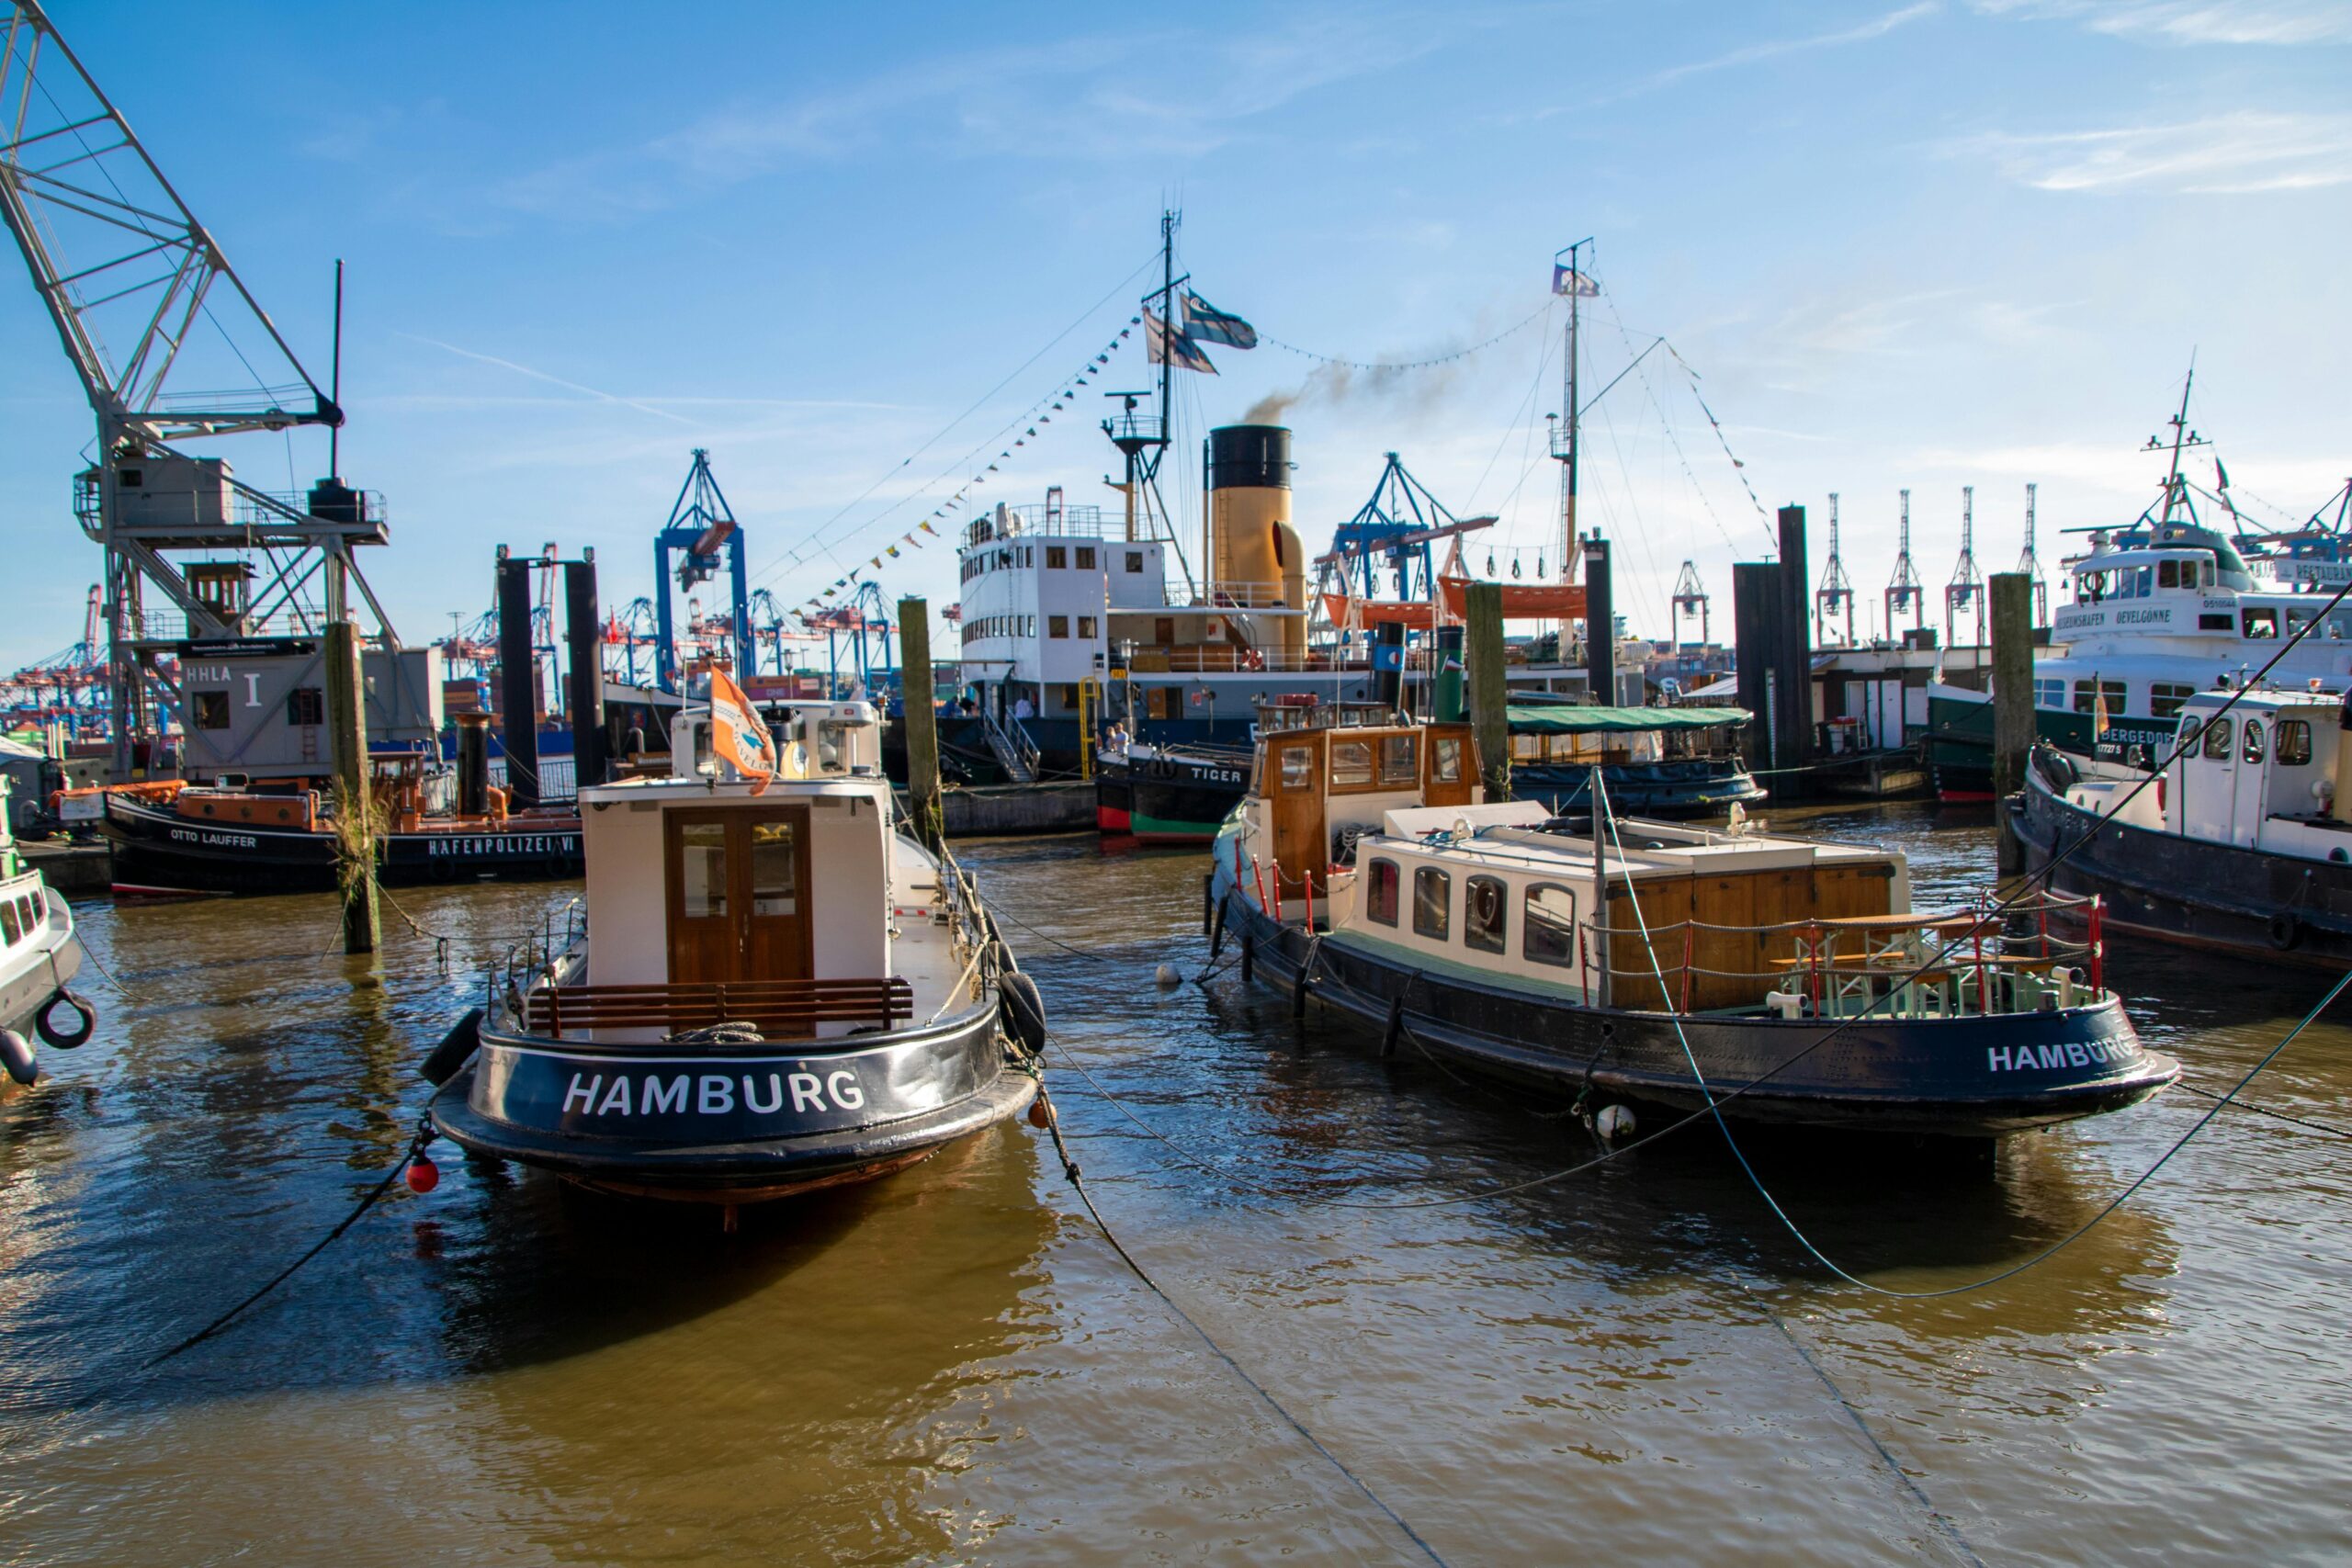 Blick in ein kleines Hafenbecken, im Vordergrund liegen mehrere kleinere Schiffe mit der Aufschrift "Hamburg".